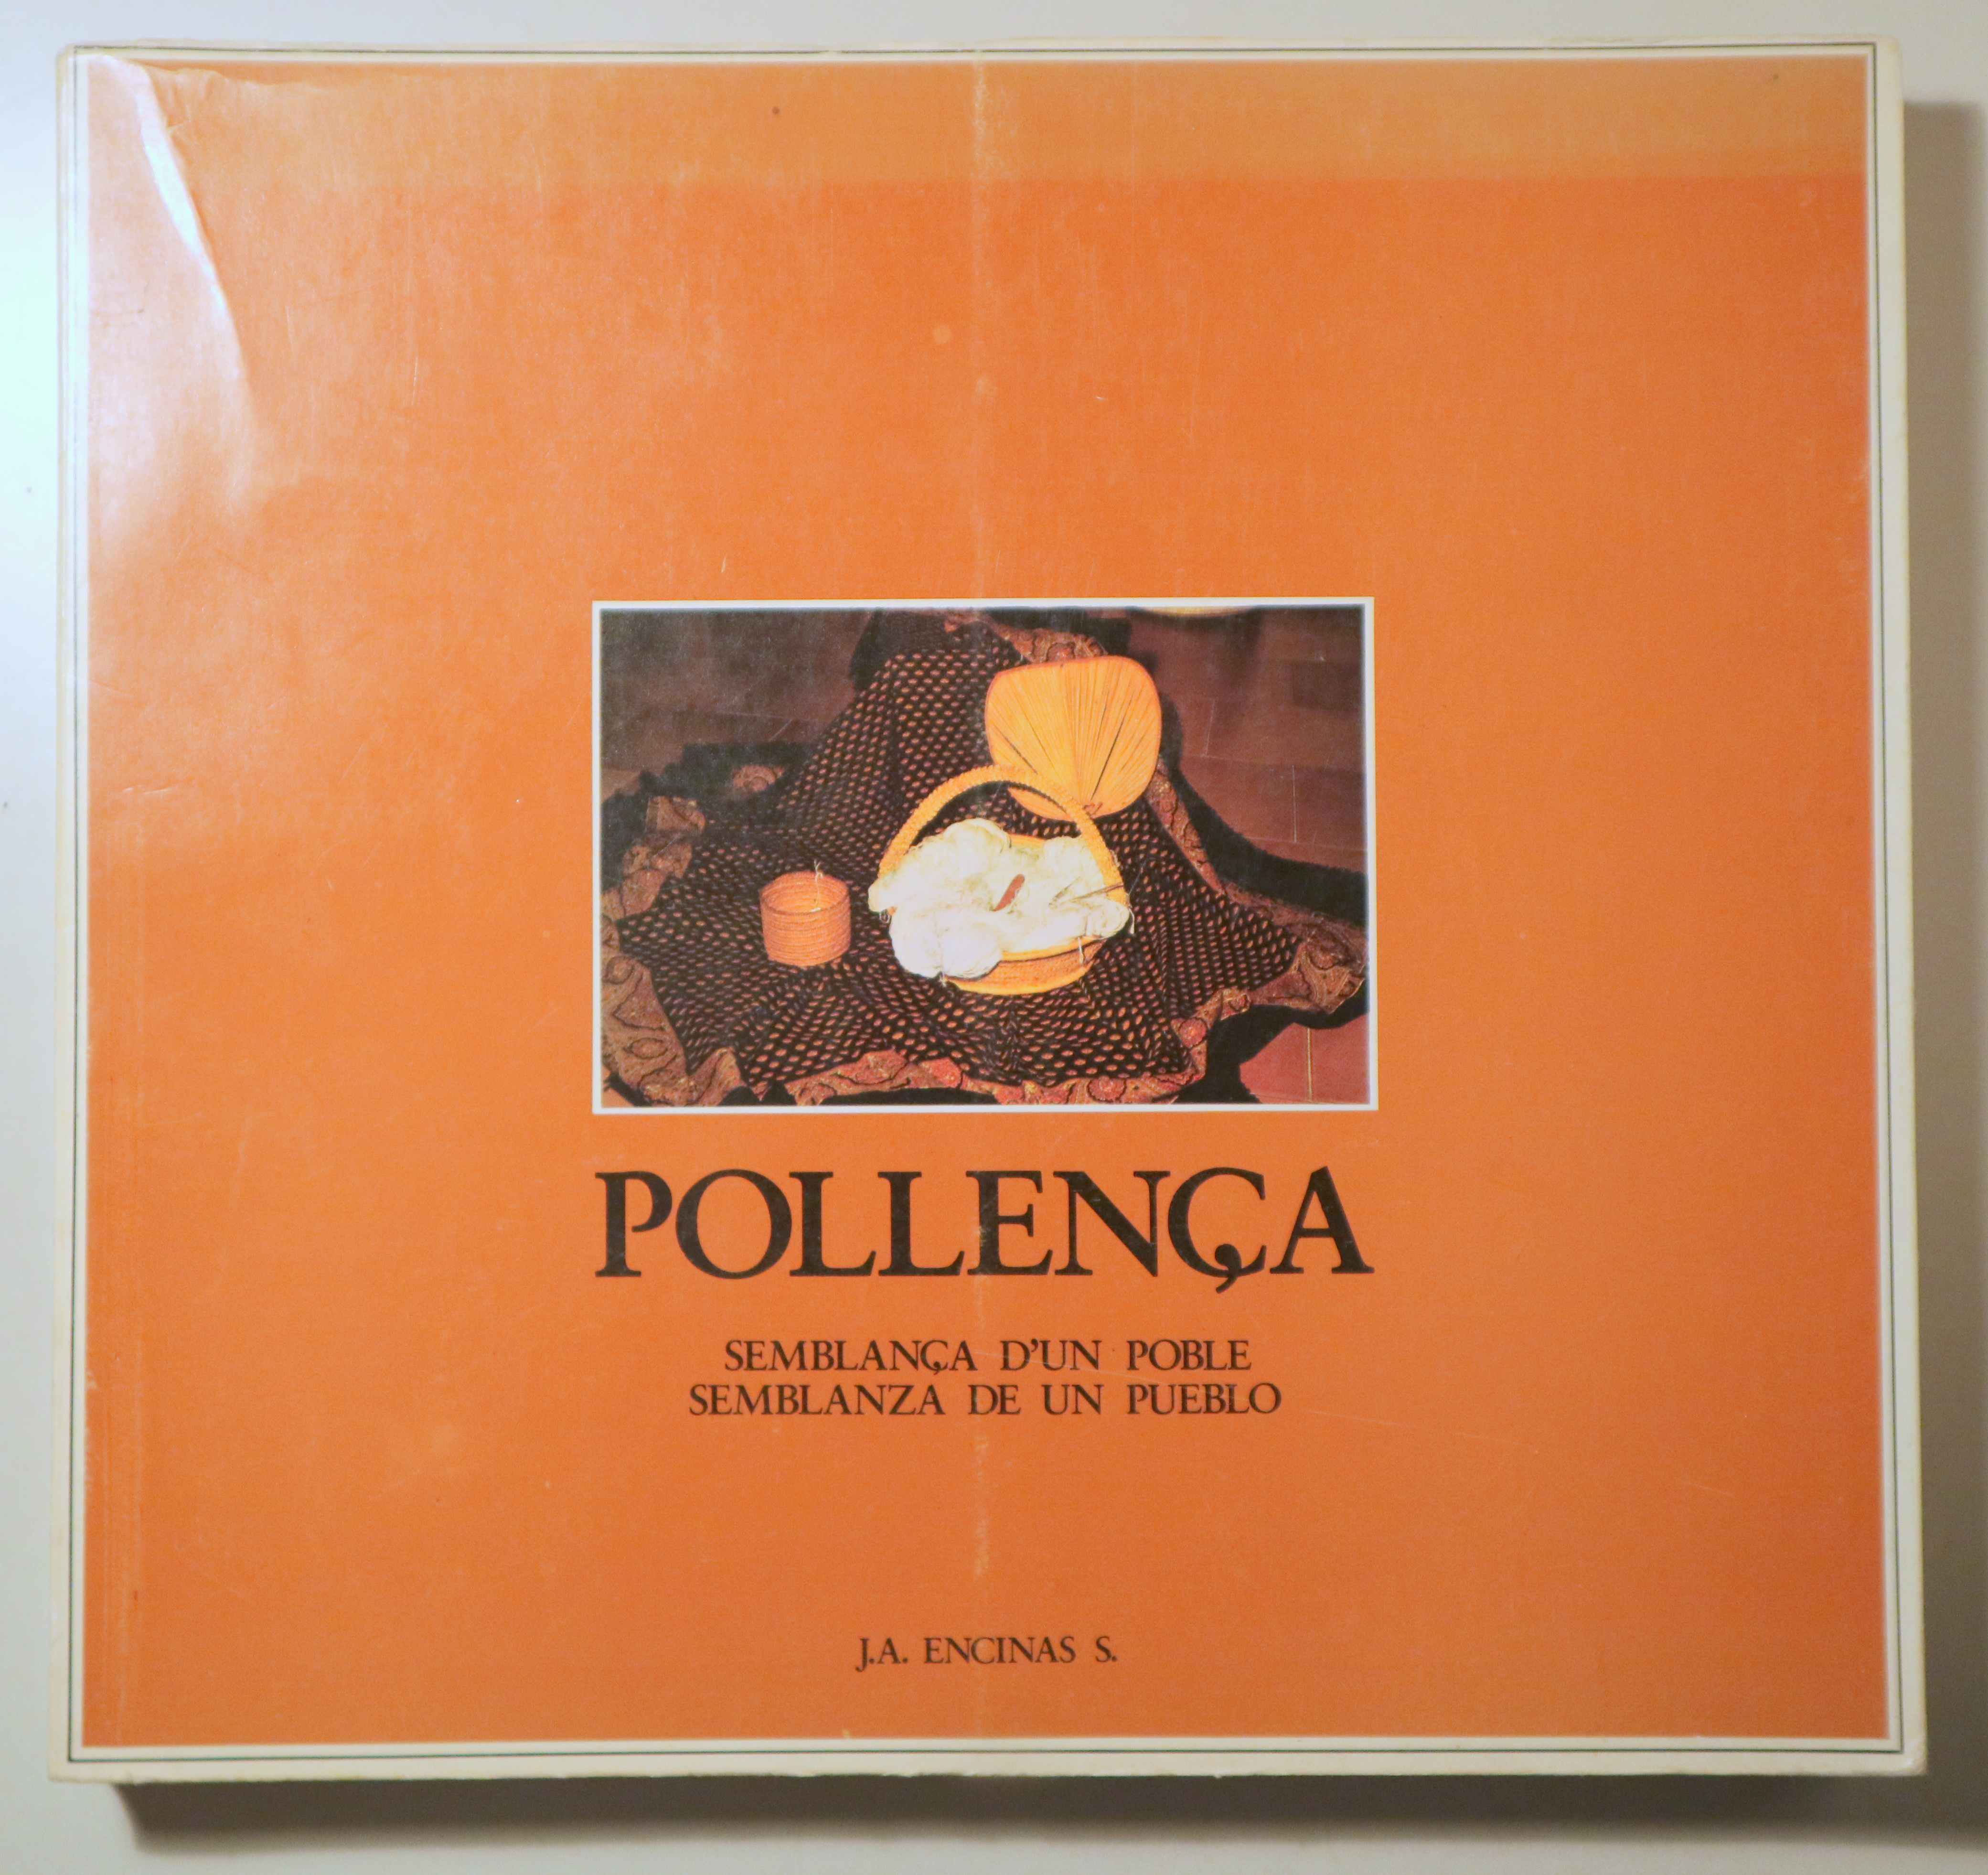 POLLENÇA. Semblança d'un poble. Semblanza de un pueblo - Palma de Mallorca 1981 - Il·lustrat - Edició bil·lingüe